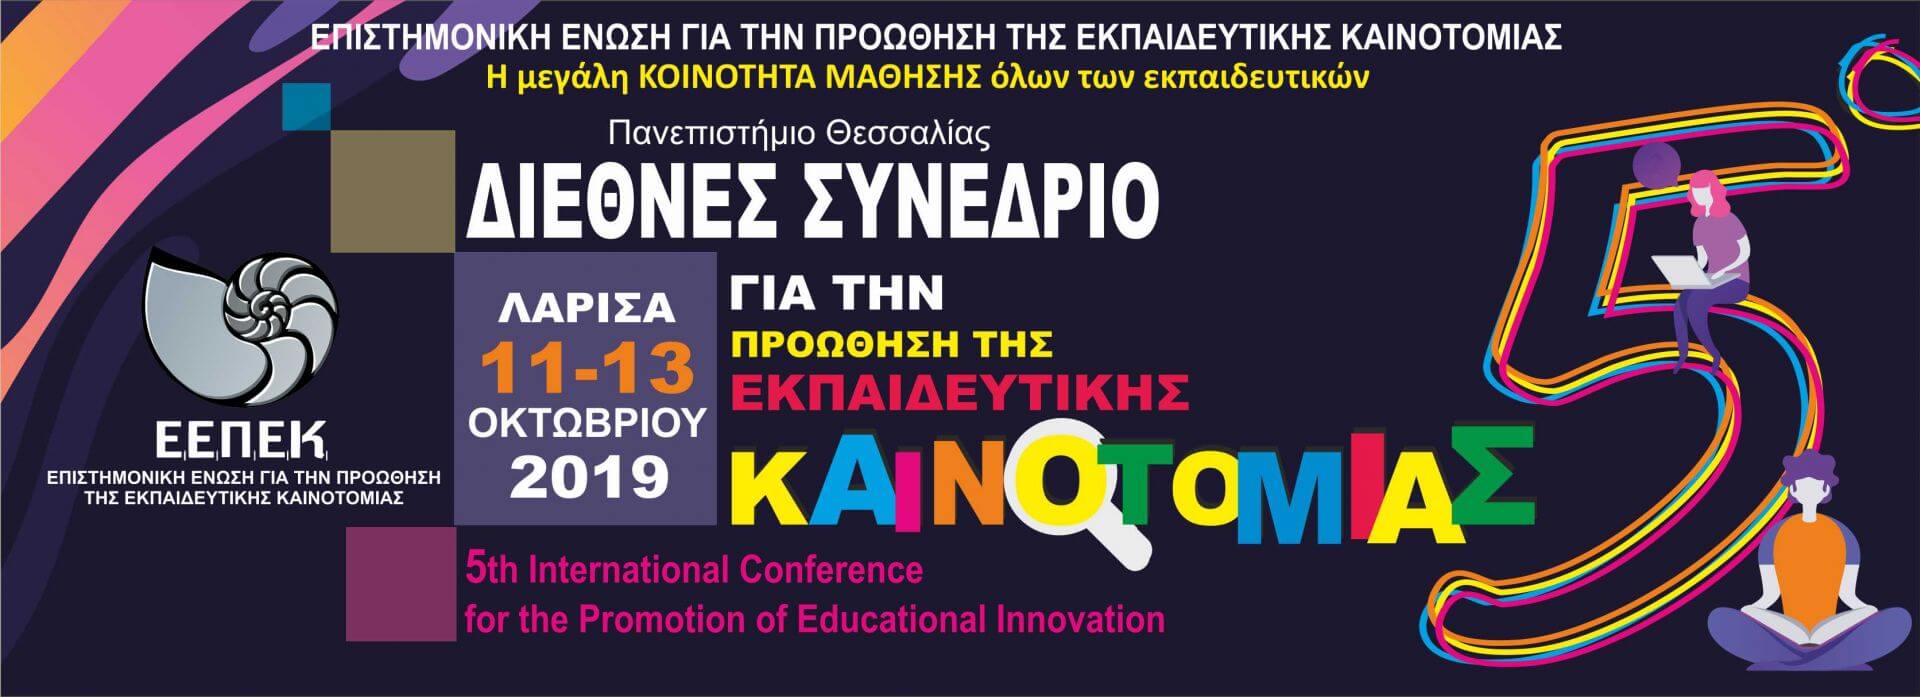 Διεθνές Συνέδριο για την προώθηση της εκπαιδευτικής καινοτομίας